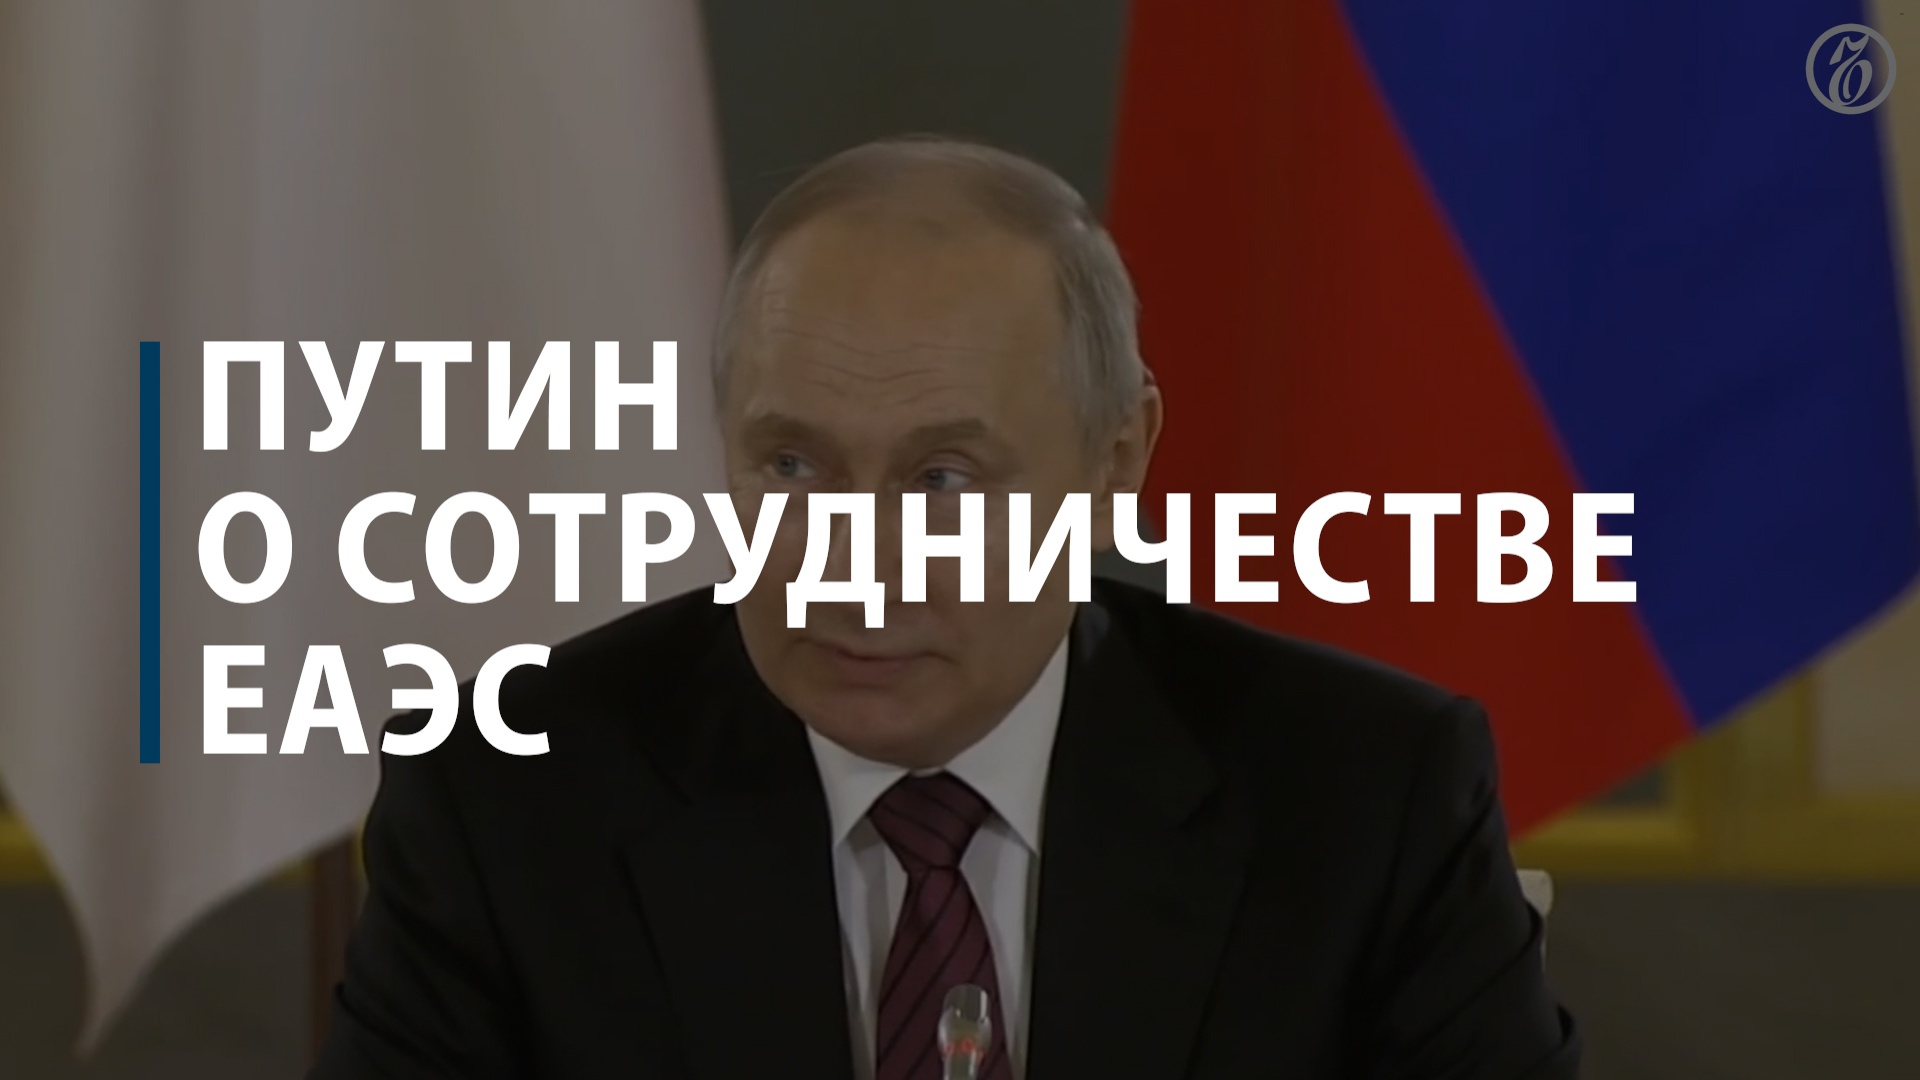 Путин о сотрудничестве ЕАЭС